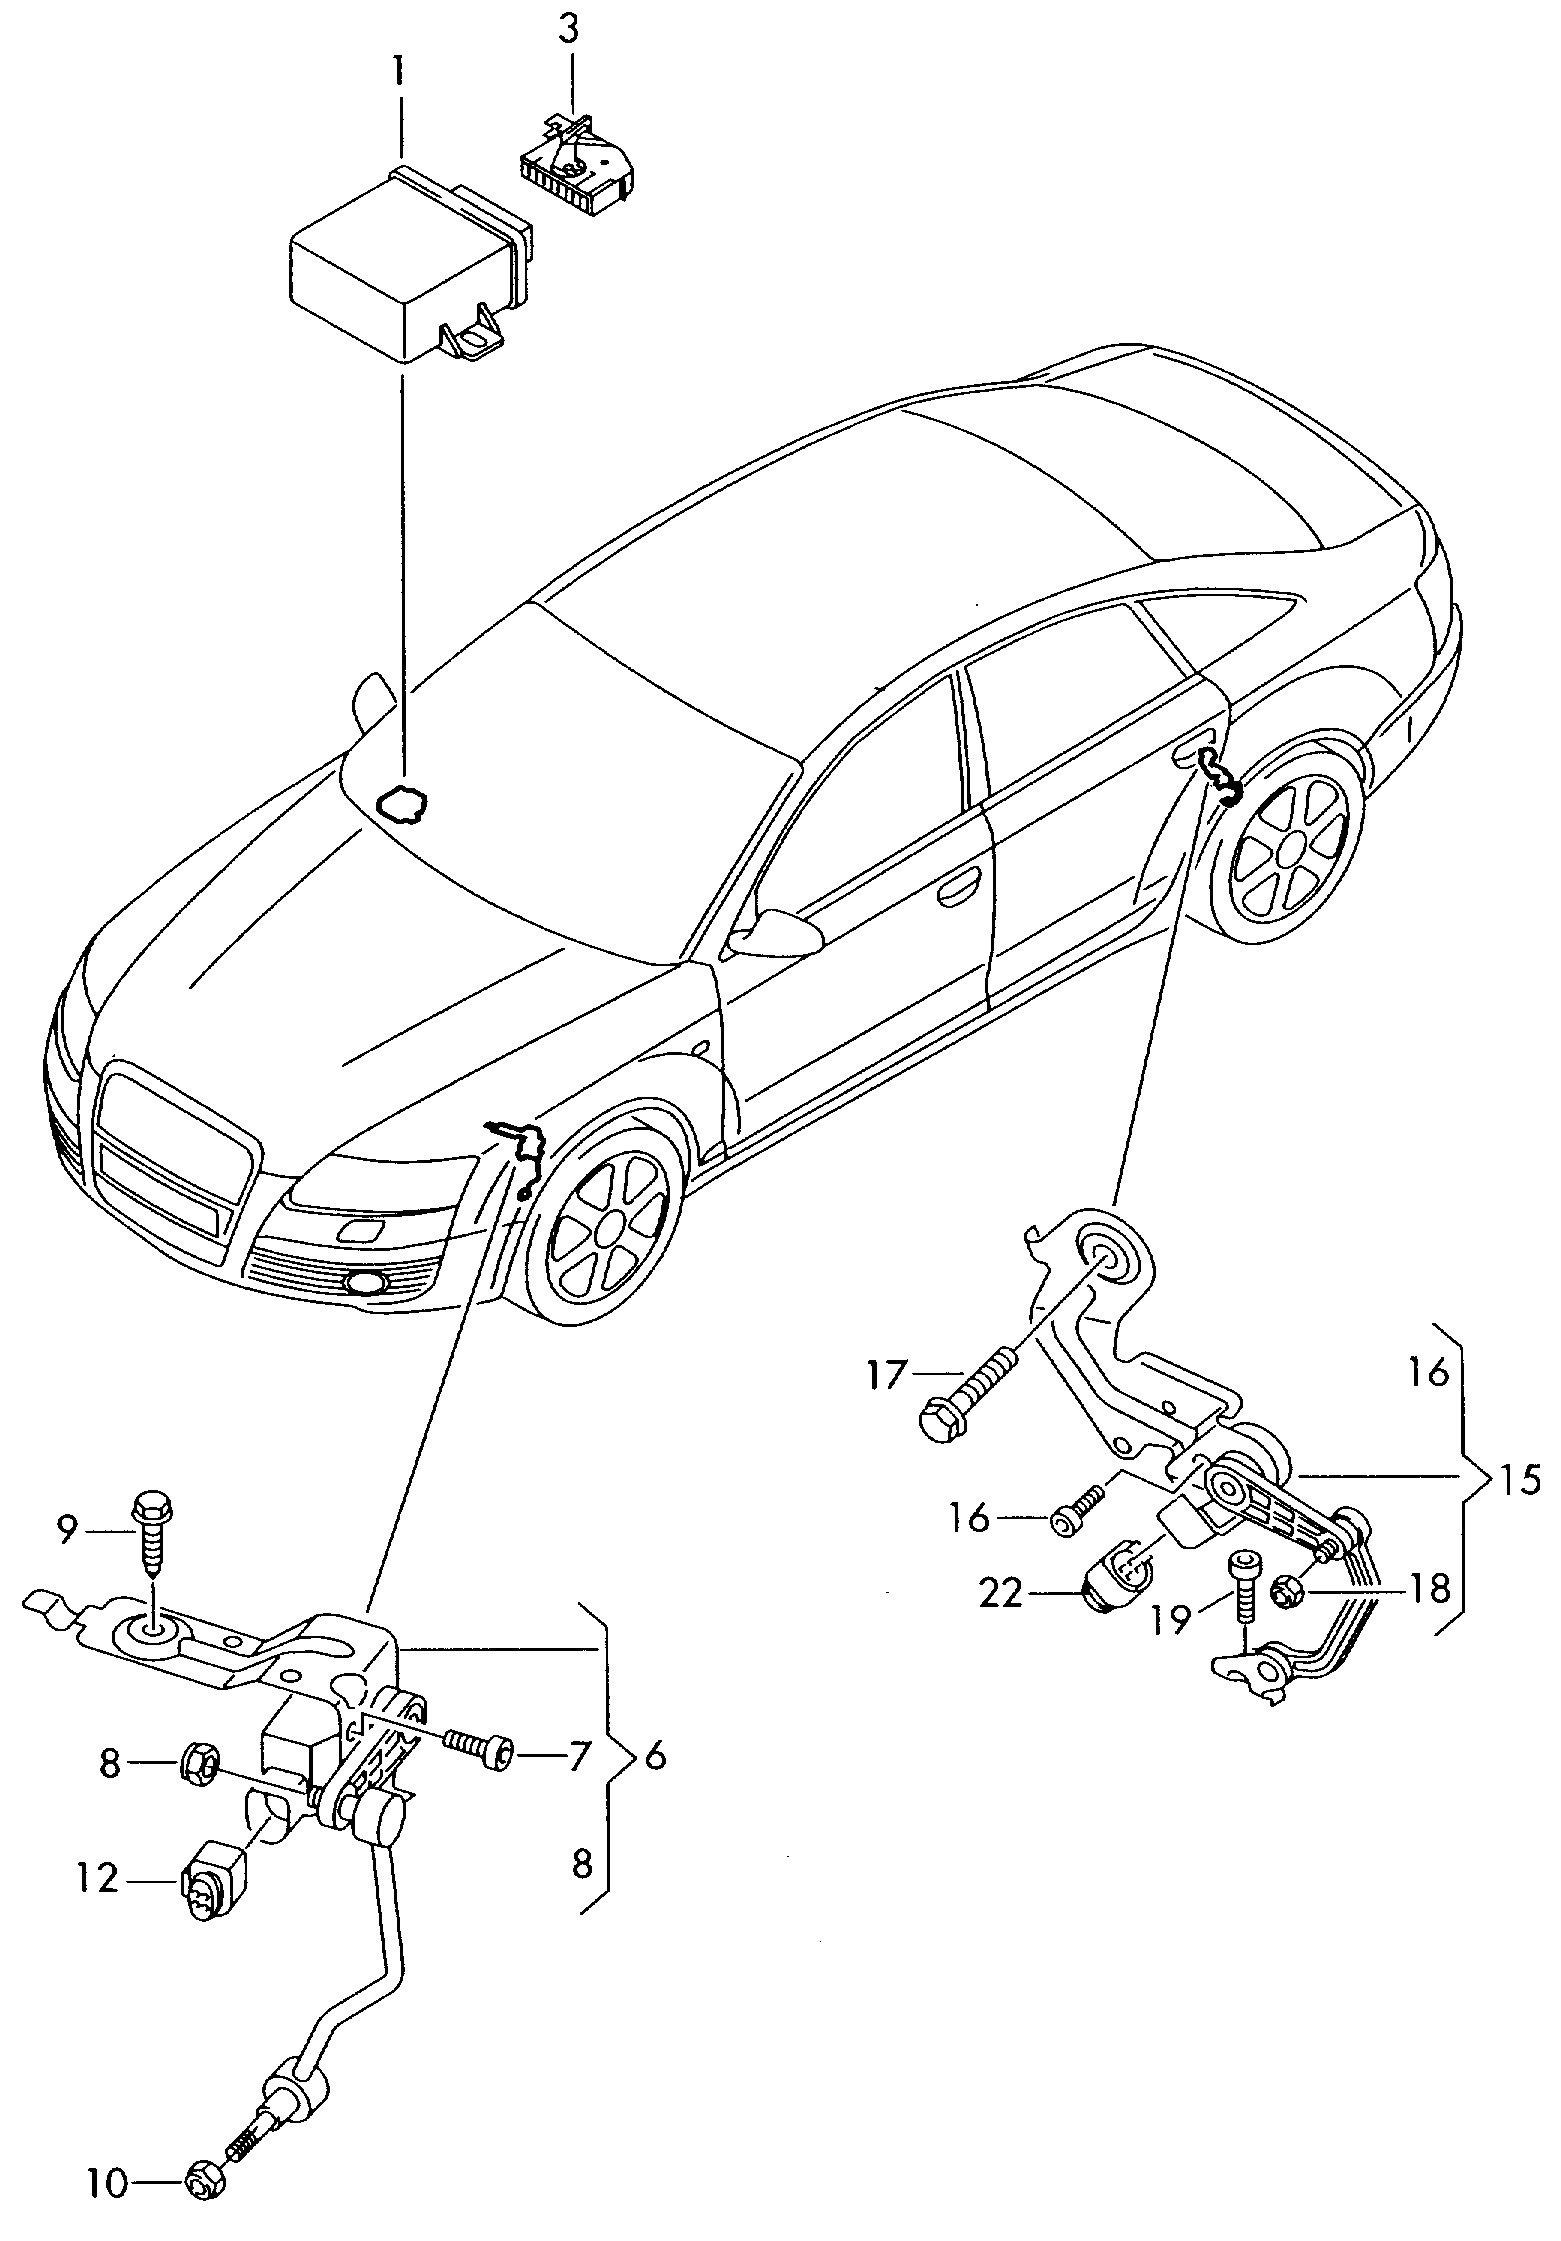 sensor voor lichtbundel-
hoogteverstelling - Audi A6/Avant(A6)  